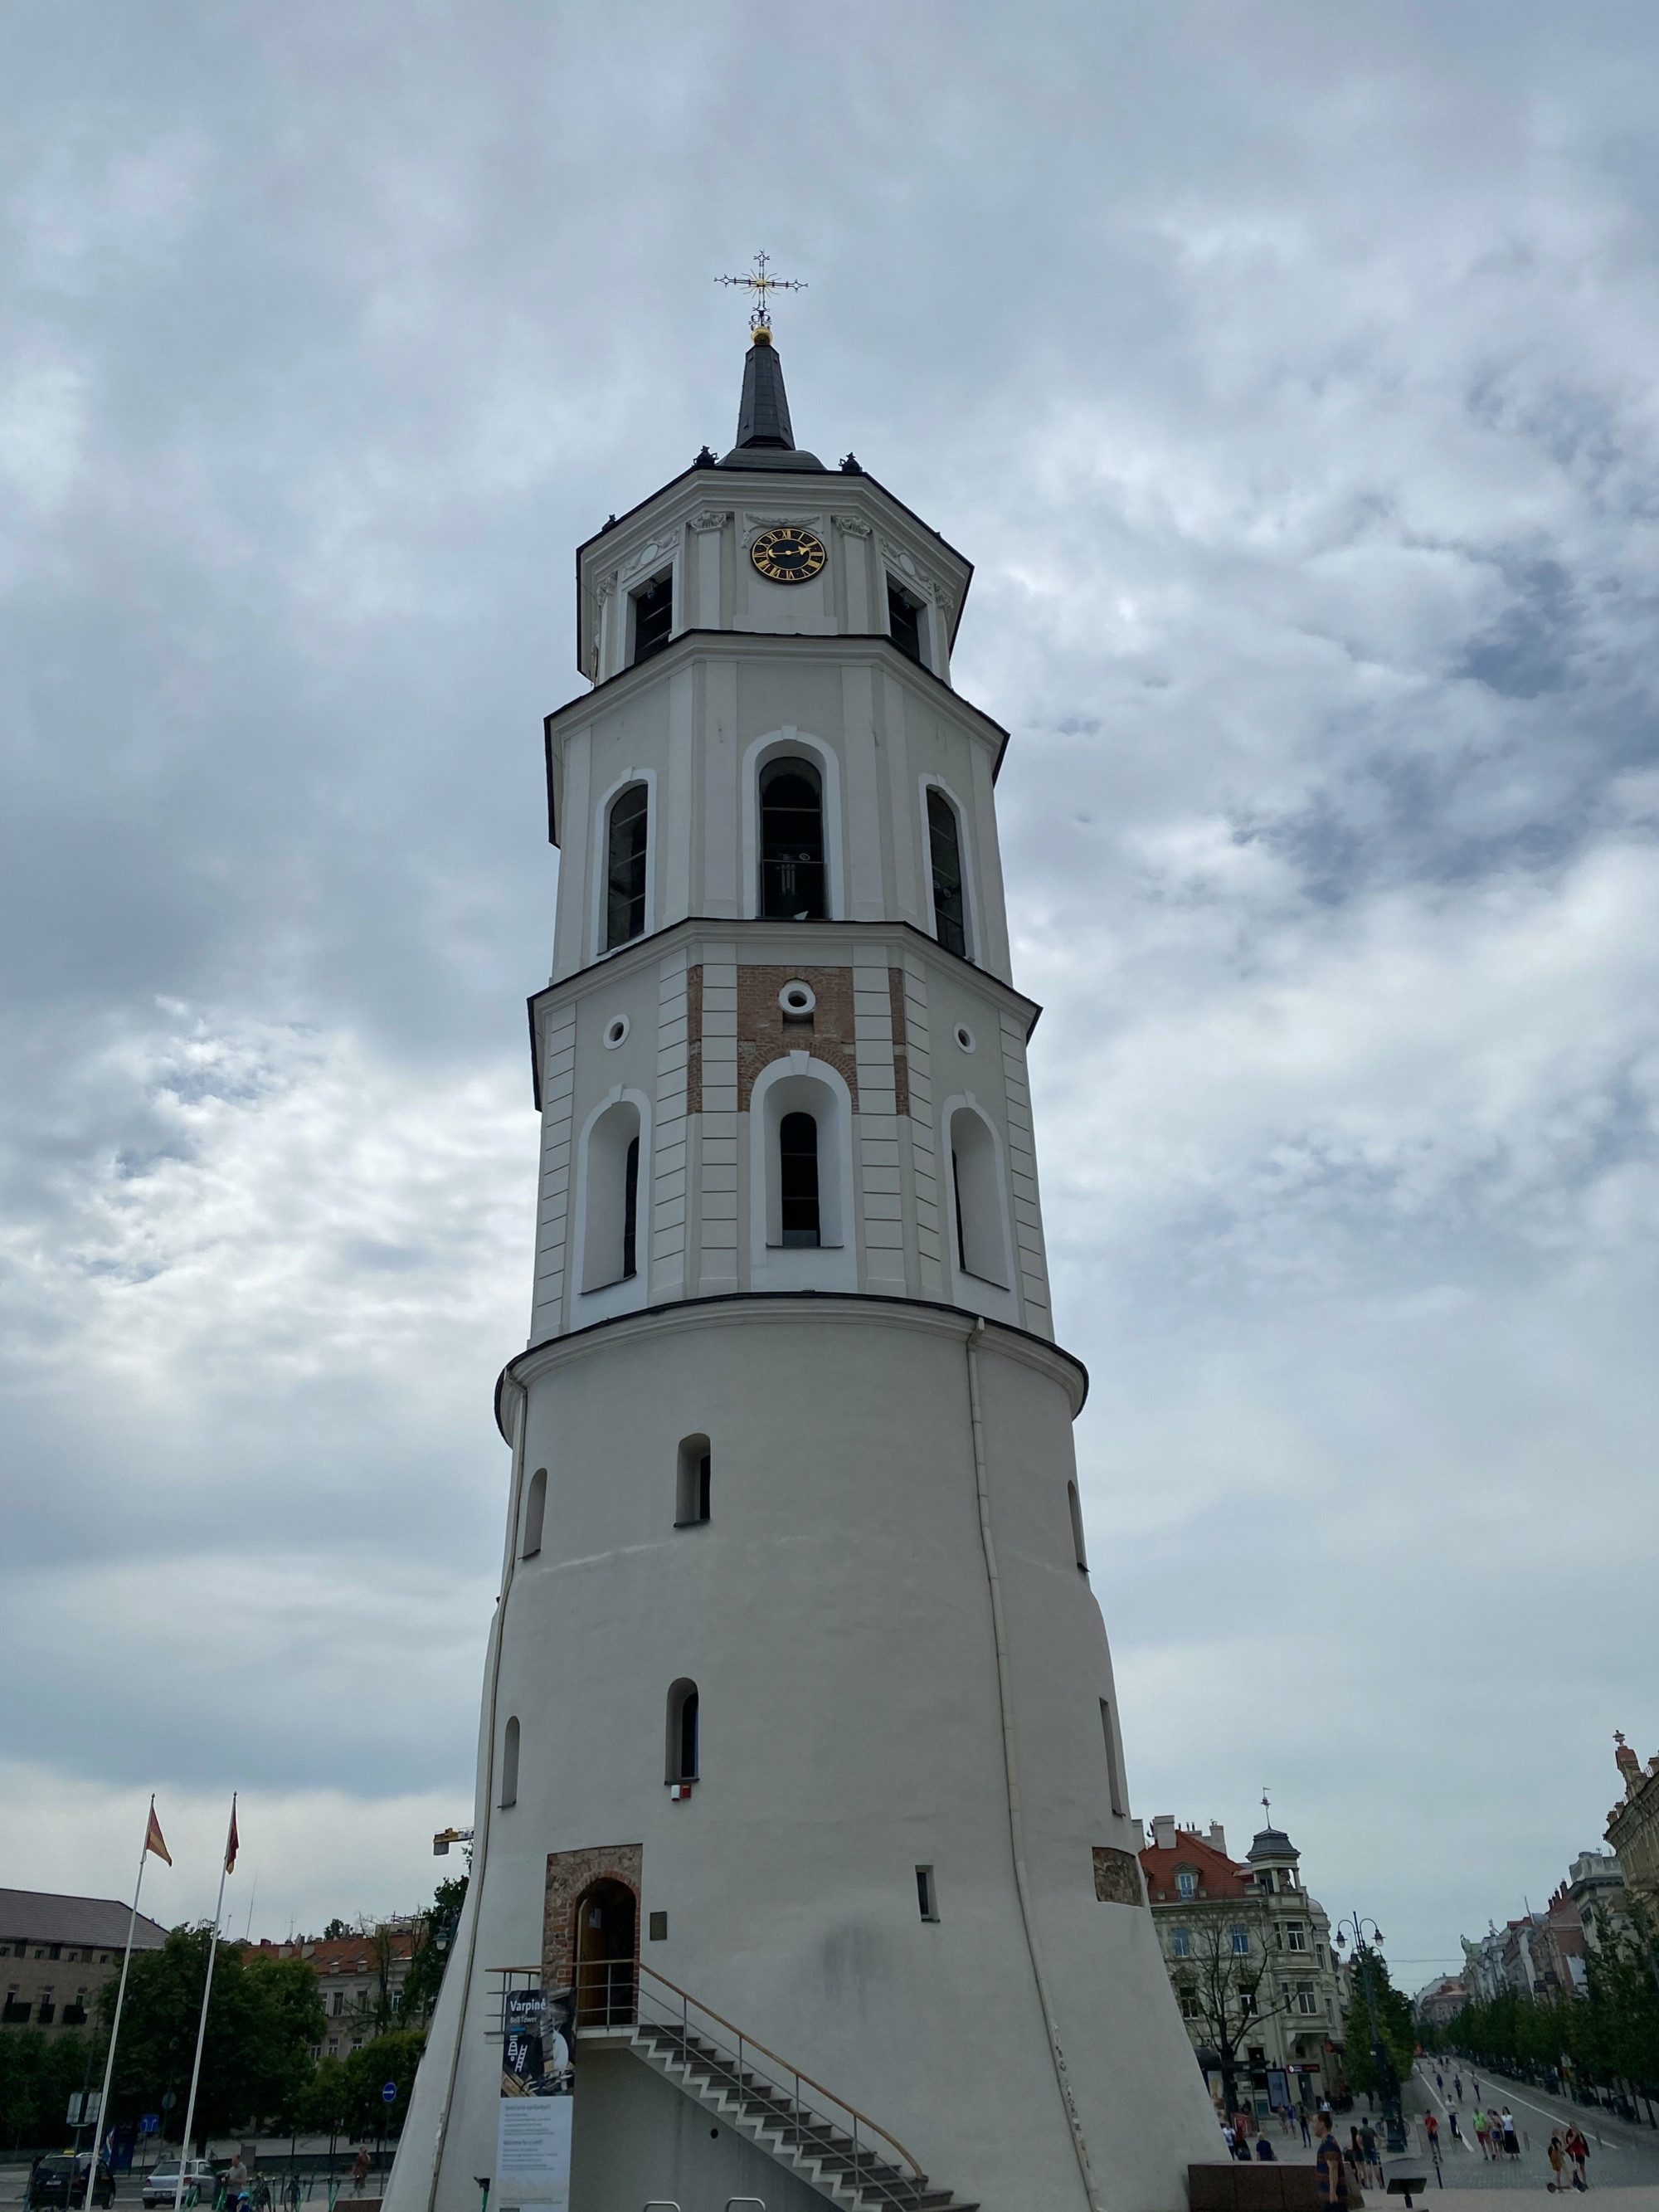 В исторических источниках колокольня впервые упомянута в 1522 году, когда башне потребовался ремонт. При реконструкции были сужены окна и уничтожены бойницы, стены покрыты штукатуркой. В первой четверти XVI века итальянский архитектор Аннус (Annus) на оборонительной круглой башне выстроил два восьмиугольных яруса для колоколов. Верхний четвёртый ярус восьмистенной части колокольни был возведён в 1598 году[2] и позднее приспособлен для часов. У двух средних ярусов есть черты барокко, четвёртый ярус в стиле классицизма. Внешние стены первых трёх ярусов выложены из булыжника. Каждые 3—4 ряда каменной кладки чередуются узкой полосой кирпичной кладки в 1—2 кирпича. Верхний четвёртый ярус выстроен из кирпичей в готической кладке.<br/> <br/>
В XVII—XIX века колокольня из-за повреждений в войнах и пожарах неоднократно перестраивалась. Восстановлением пострадавшей при пожаре в 1610 году колокольни руководил архитектор Вильгельм Поль. Во второй половине XVII веке на башне было повешено несколько колоколов, отлитых Яном Деламарсом, и установлены часы. В середине XVIII века мастер Густав Мёрк повесил на колокольне больше колоколов. Крыша колокольни была сформирована в 1893 году, но позже её форма менялась. Она покрыта жестью, венчающий её шпиль (8 м) — листовой медью. Верхушка шпиля оканчивается железным крестом (5 м) работы местных мастеров, в 1893 году закреплённым на позолоченном барабане.<br/> <br/>
Башенные часы изготовлены в конце XVII века и установлены на башне в 1672 году. Предполагается, что часовой механизм был изготовлен в Германии; имя мастера неизвестно. Механизм реконструировался в 1803 году. Эта дата вырезана в кованой раме часов. Занимался реконструкцией часового механизма староста виленского цеха часовщиков Юзеф Бергман. В конце XIX века рухнула башня с часами вильнюсской Ратуши и часы колокольни собора стали главными часами в городе.<br/> <br/>
Циферблаты из медного листа установлены на всех четырёх сторонах самого верхнего яруса. Циферблаты диаметром 2 м снабжены только часовой стрелкой. Обод циферблатов, римские цифры и стрелки покрыты позолотой. Тупой конец единственной стрелки украшен полумесяцем, остриё показывает часы.<br/> <br/>
Колокол, отбивающий часы, отлит в 1673 году литейных дел мастером Яном Деламарсом. Его высота — 58 см, диаметр — 107 см. Колокол опоясан латинской надписью, украшен рельефными фигурами Пресвятой Девы Марии, покровителей собора святого Казимира и святого Станислава. Меньший колокол, отбивающий четверти, отлит в 1758 году. Фундаторами колокола были епископ виленский Николай Стефан Пац и Анджей Казимир Оссовский. Четверти часов отсчитывает колокол меньшего размера, отлитый в 1754 году литейщиком Густавом Мёрком. Молоточки бьют по нему каждые 15 минут: один удар — первая четверть часа, два удара отбивают полчаса, три удара – 45 минут. Новый час отмечают четыре удара колокола меньшего размера; после короткой паузы молоток большого колокола наносит удары по числу часов.<br/> <br/>
Колокольня ремонтировалась в 1965 году. В 1967 году на колокольне были установлены 17 колоколов разной величины, на которых вызванивали мелодии во время празднеств и полуденный сигнал литовского радио.<br/> <br/>
В колокольне размещался диспетчерский пункт Вильнюсского бюро путешествий и экскурсий.